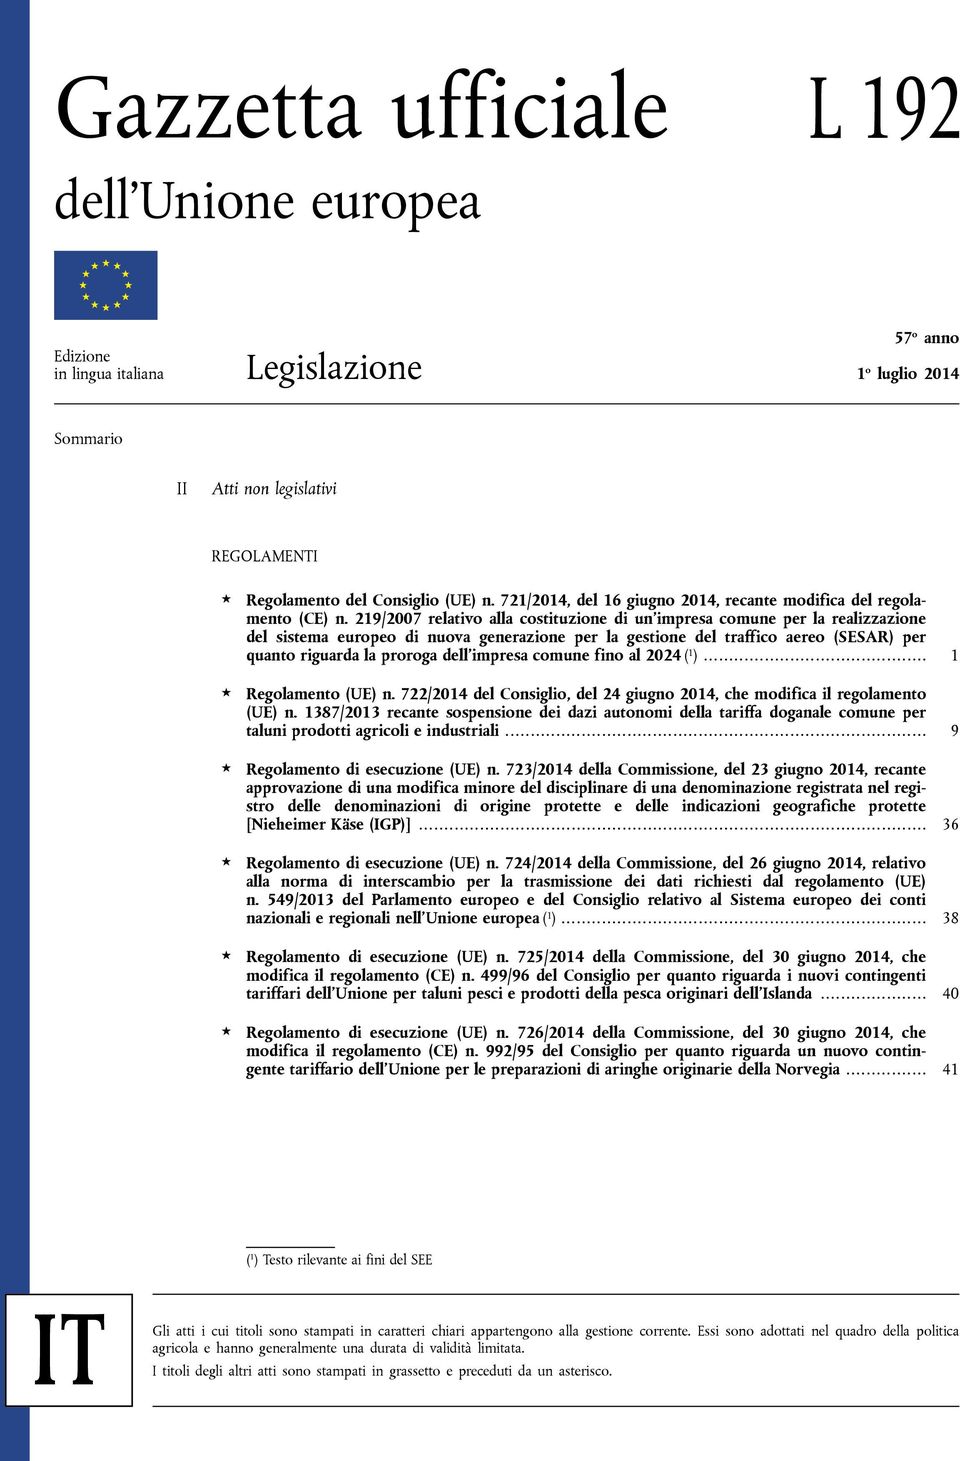 219/2007 relativo alla costituzione di un'impresa comune per la realizzazione del sistema europeo di nuova generazione per la gestione del traffico aereo (SESAR) per quanto riguarda la proroga